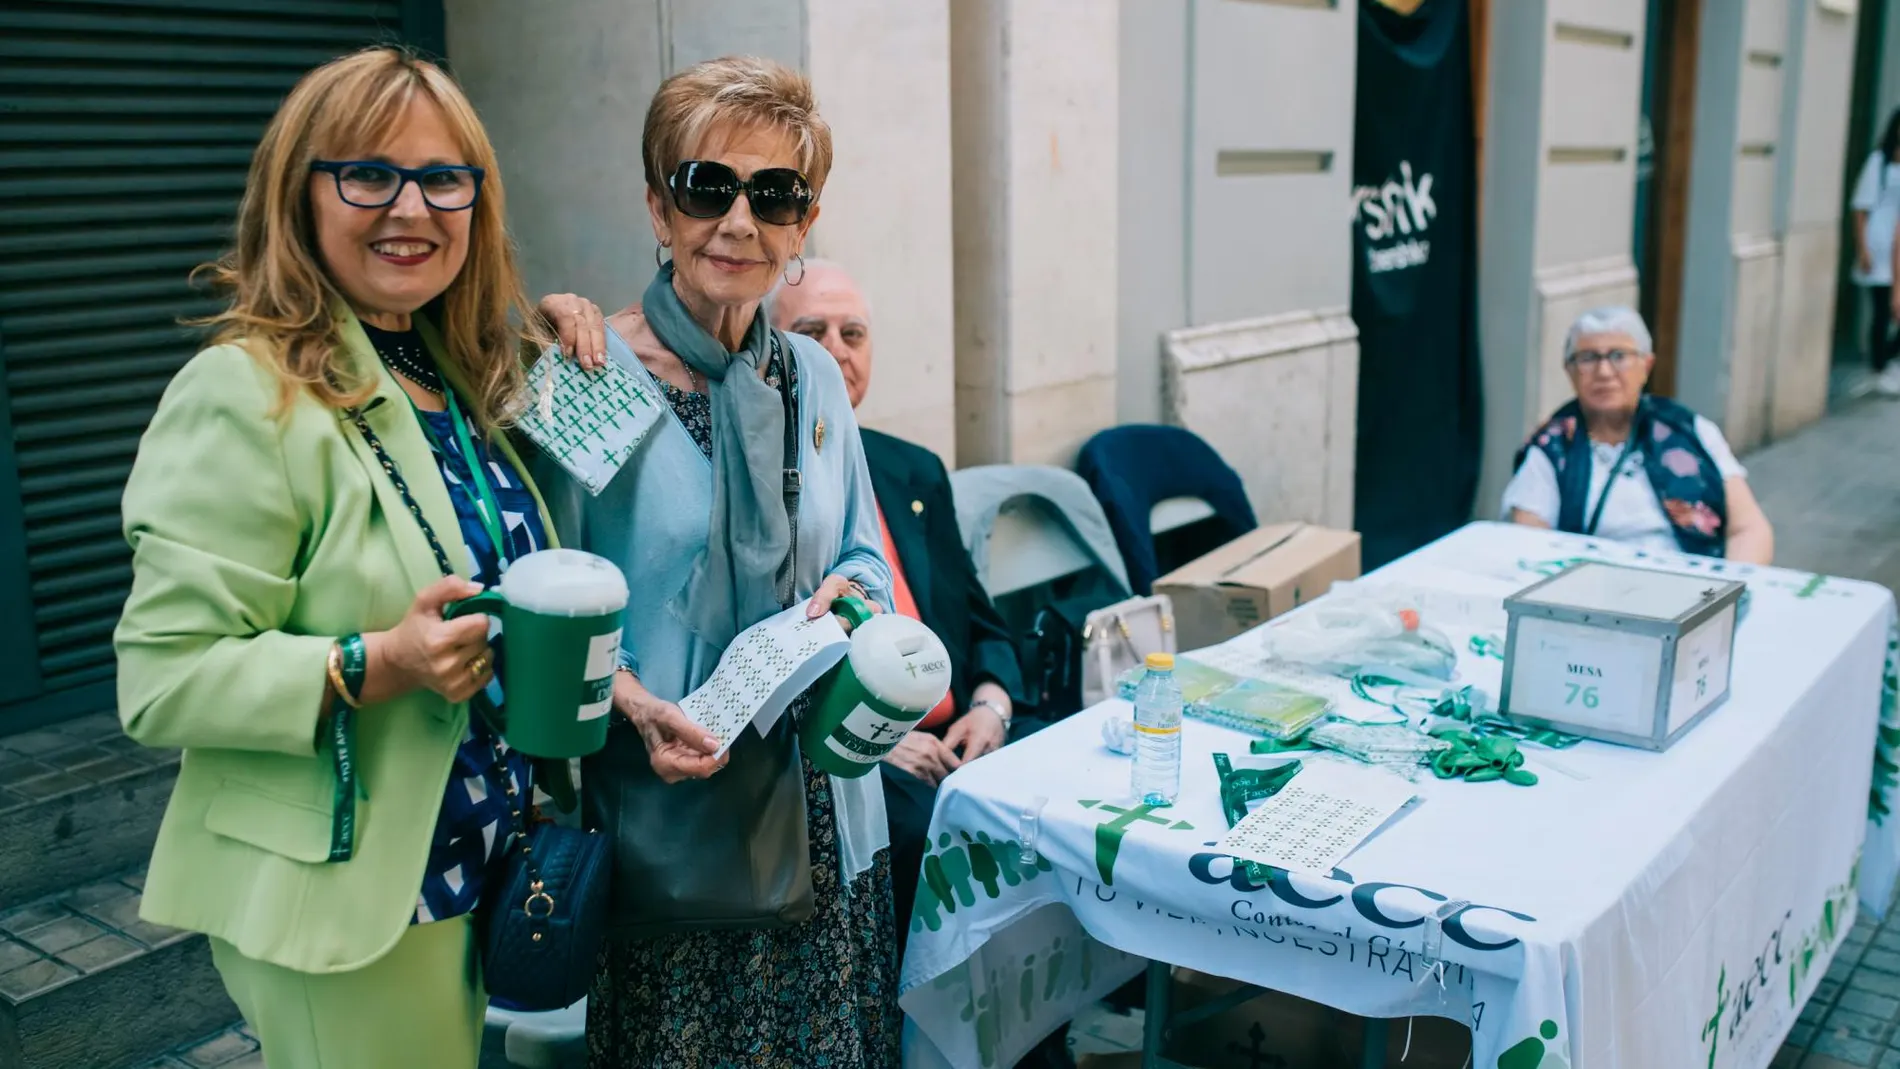 La entidad ha instalado en toda la ciudad de Valencia 146 Mesas Petitorias con 2.000 huchas verdes y ha contado con la ayuda de 1.500 colaboradores